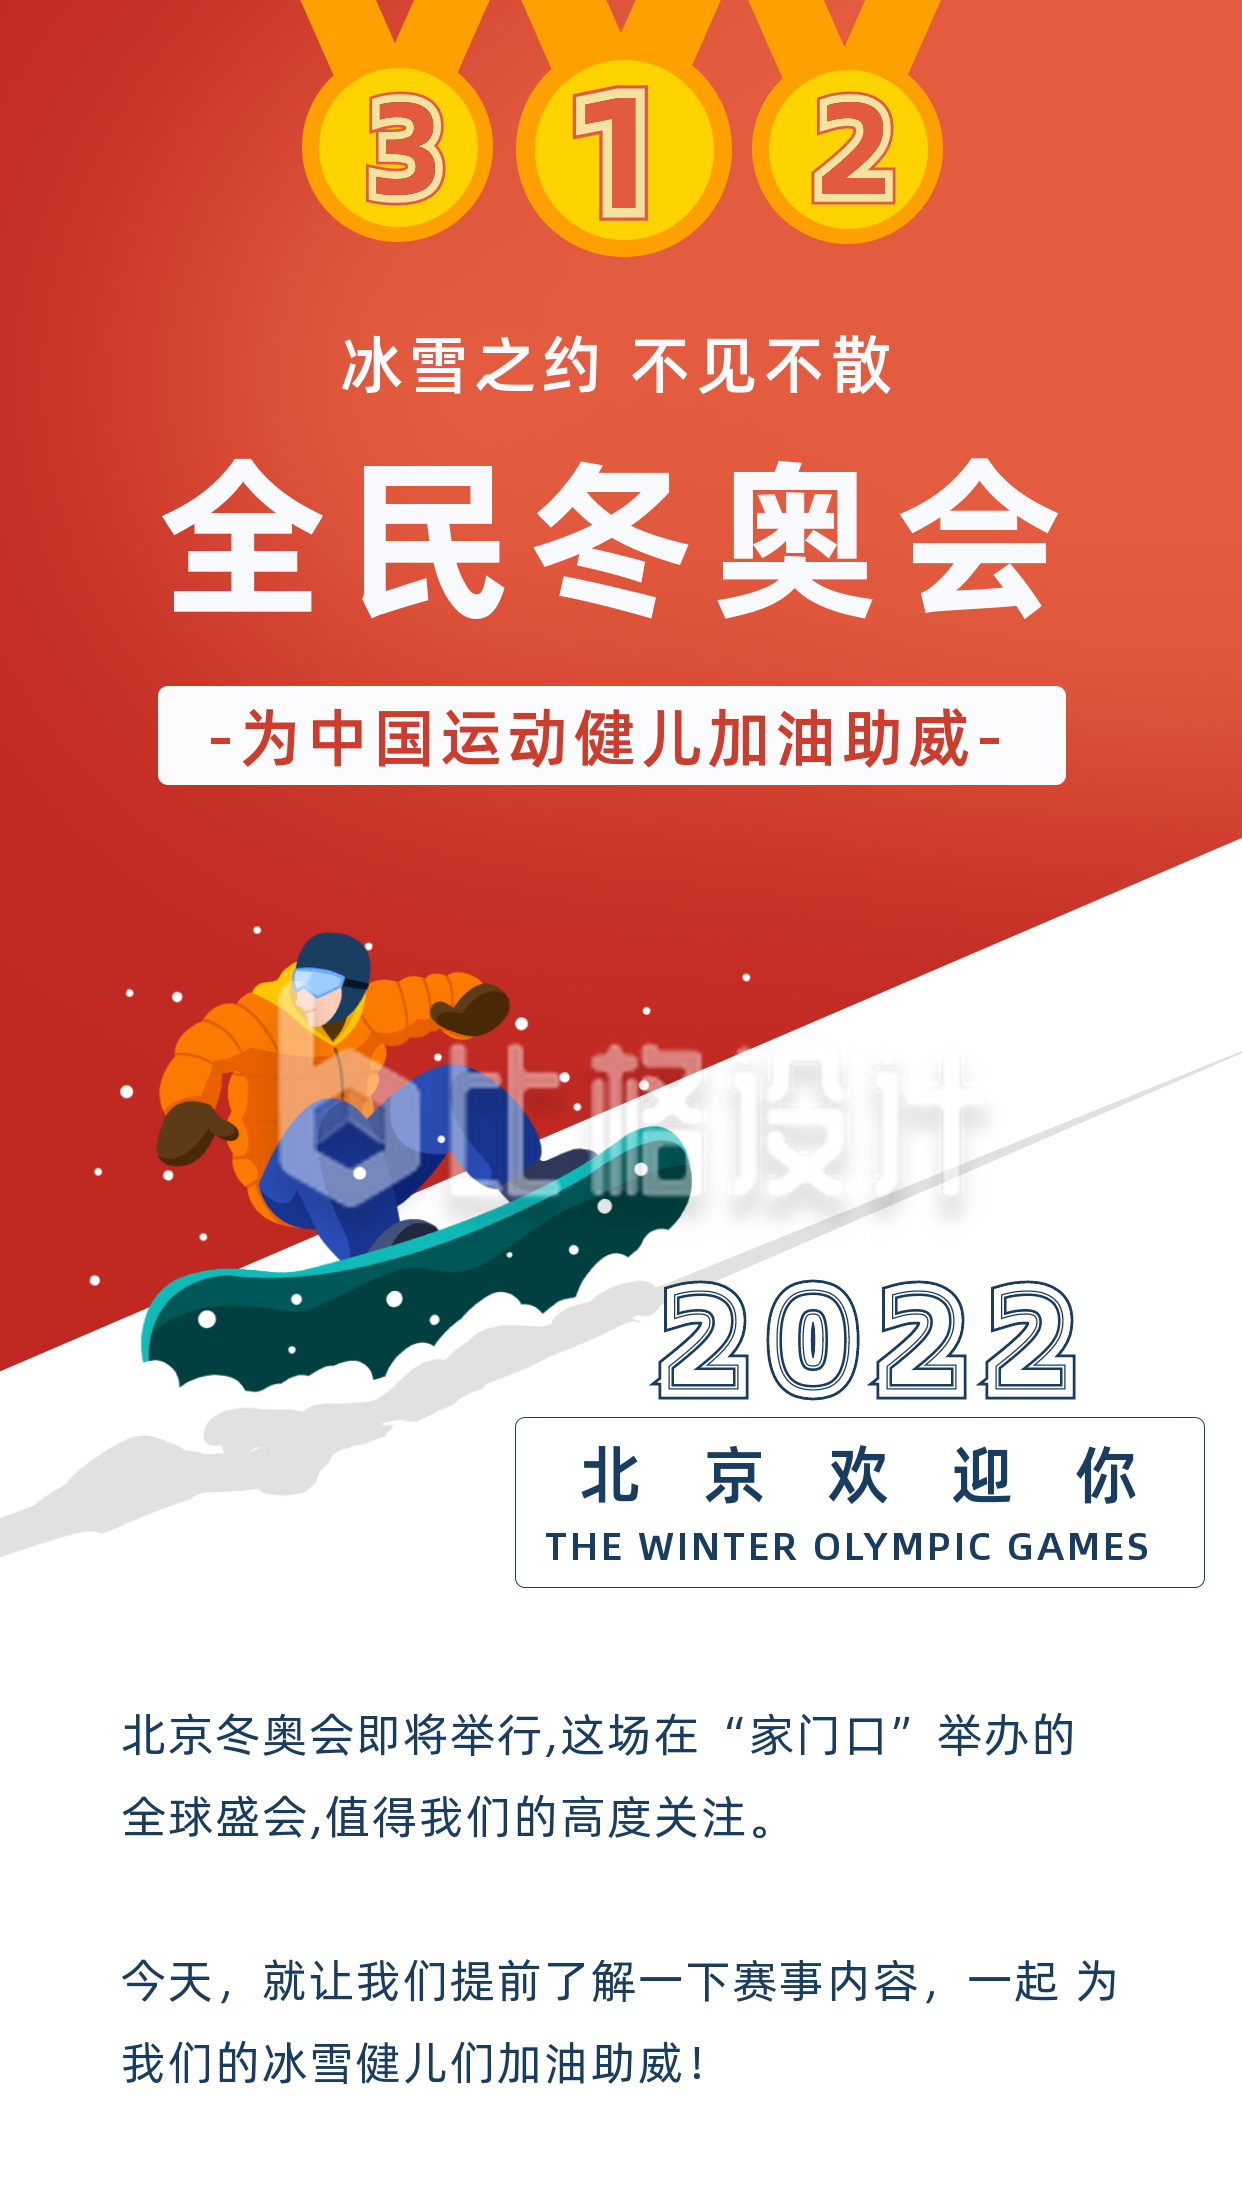 冬季滑雪运动比赛奖牌竖版配图